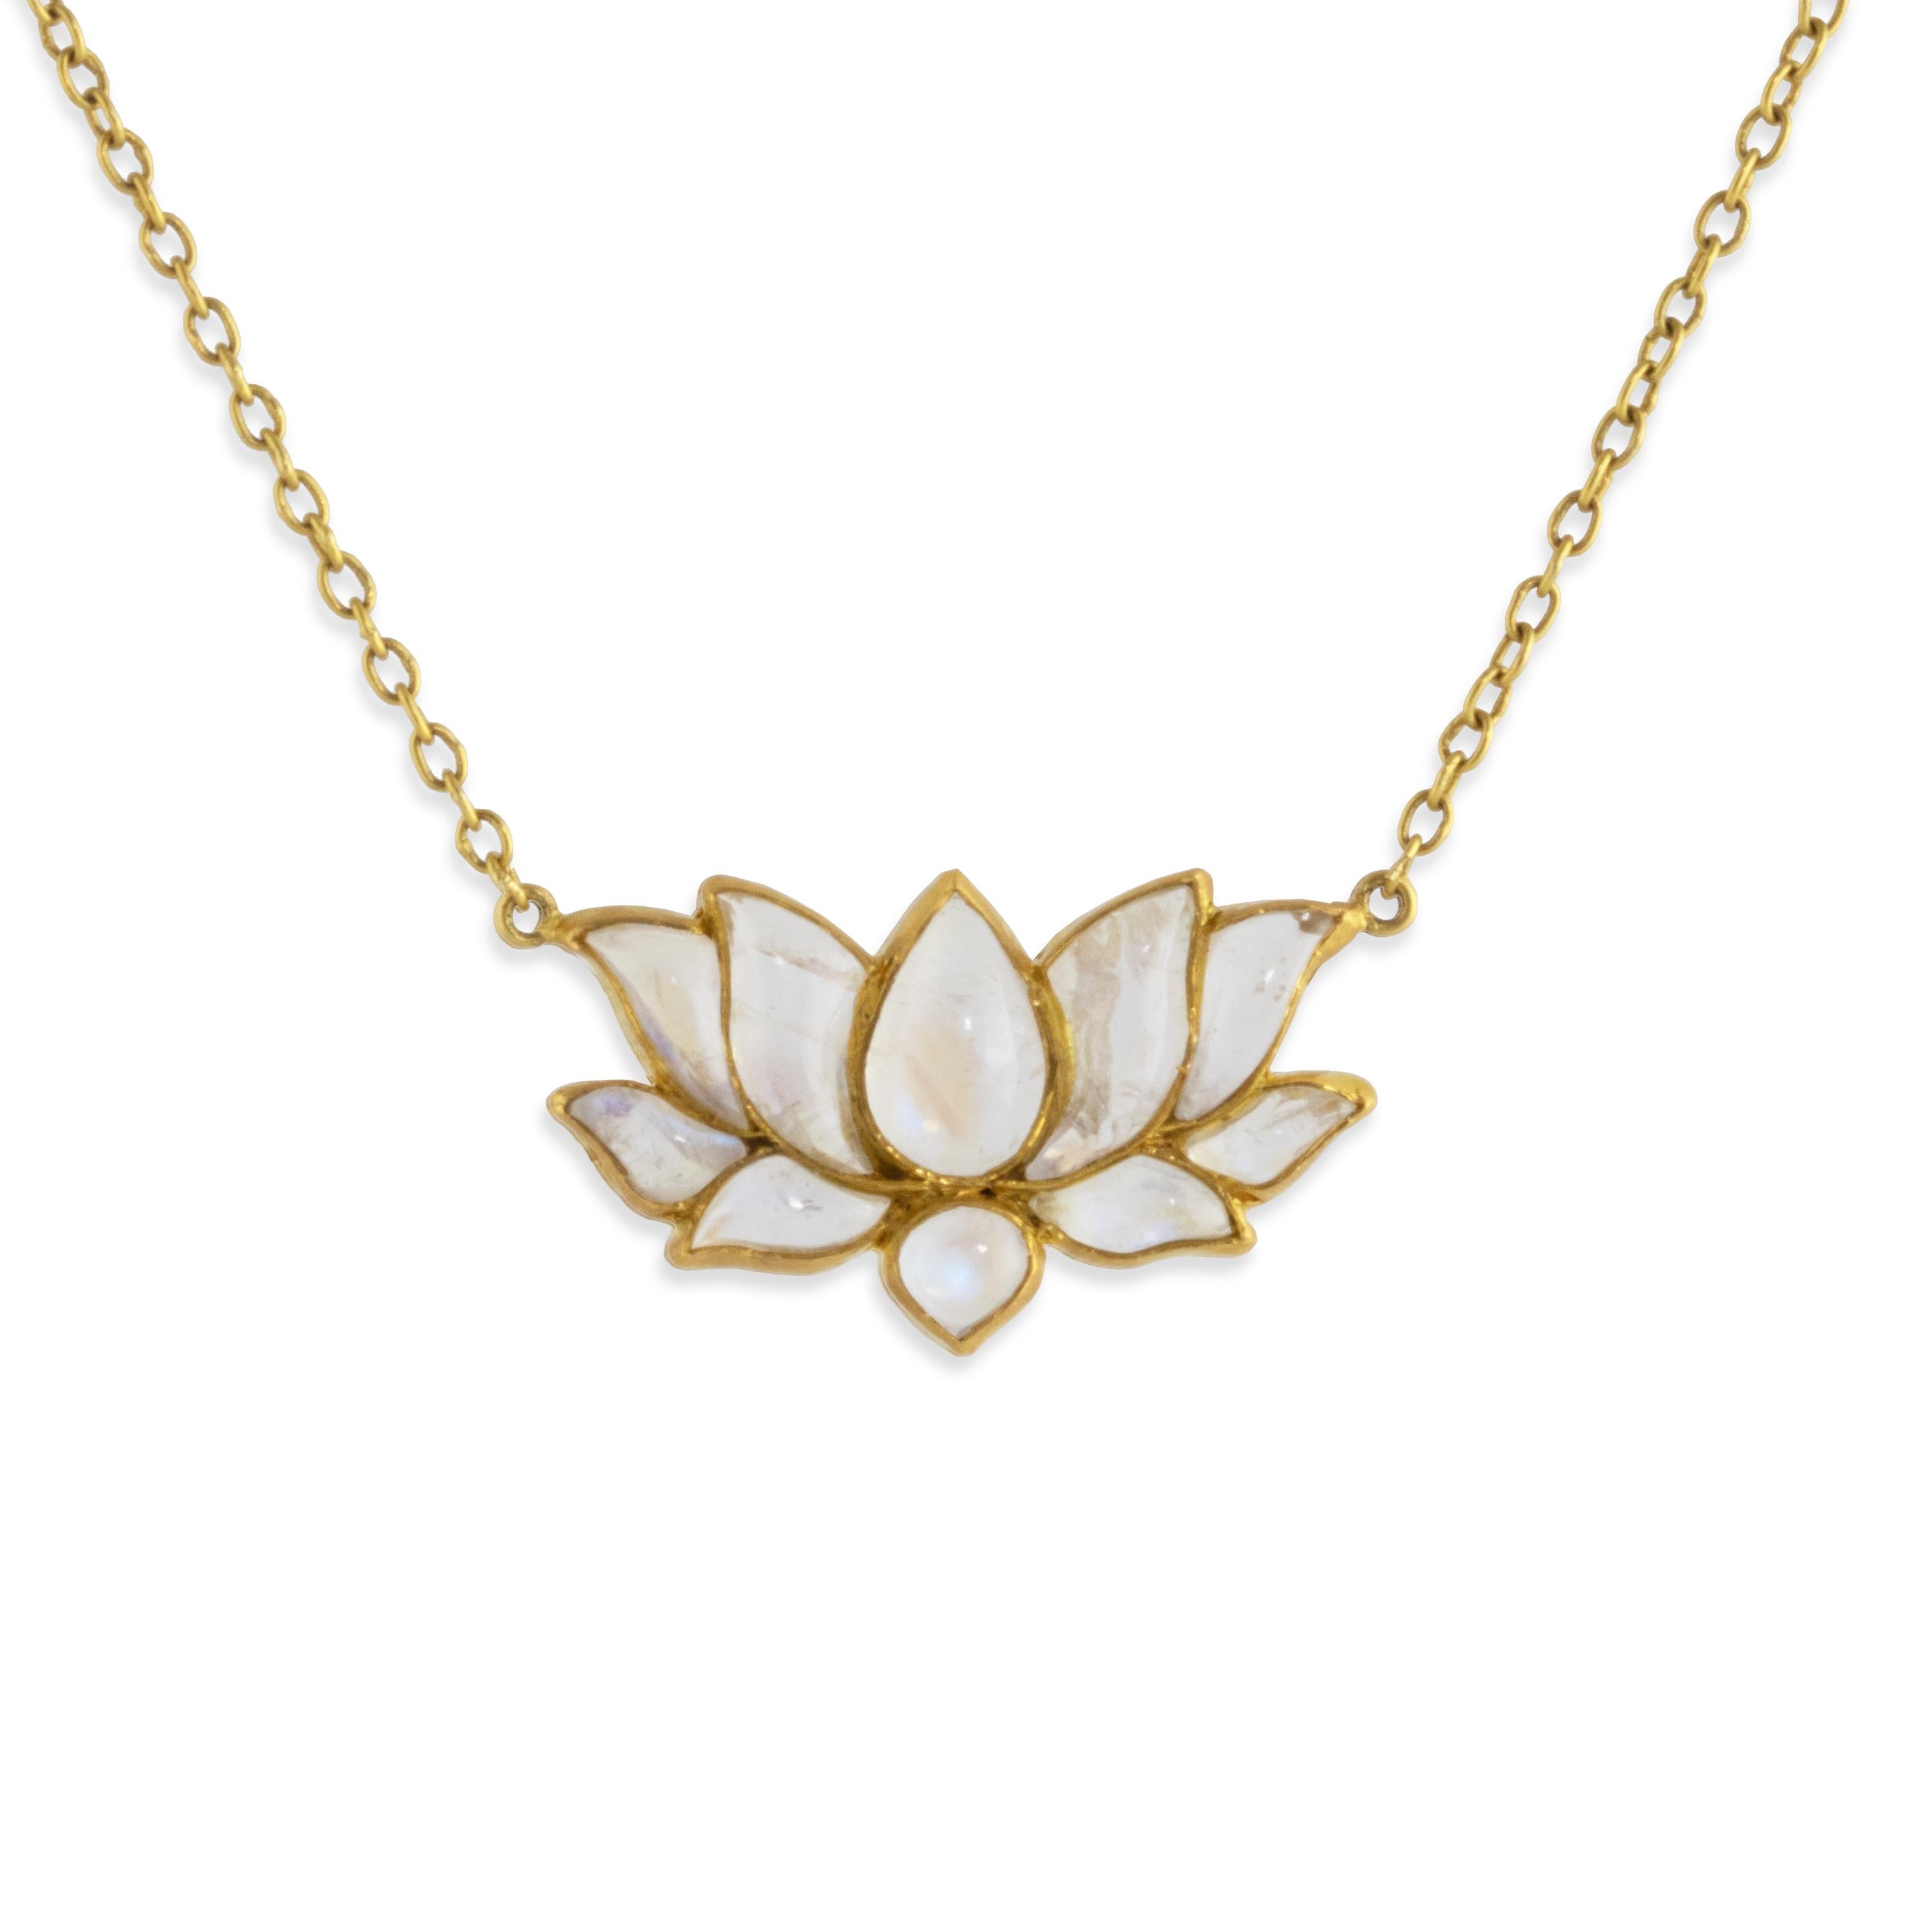 Eine spektakuläre Lotus-Halskette mit einem Lotus-Tropfen in der Mitte, der von mehreren Blütenblättern umgeben ist, die in Regenbogen-Mondstein-Cabochons geschnitzt sind. Die Stücke sind wie ein offenes Blütenmosaikmuster in 22-karätigem Gold